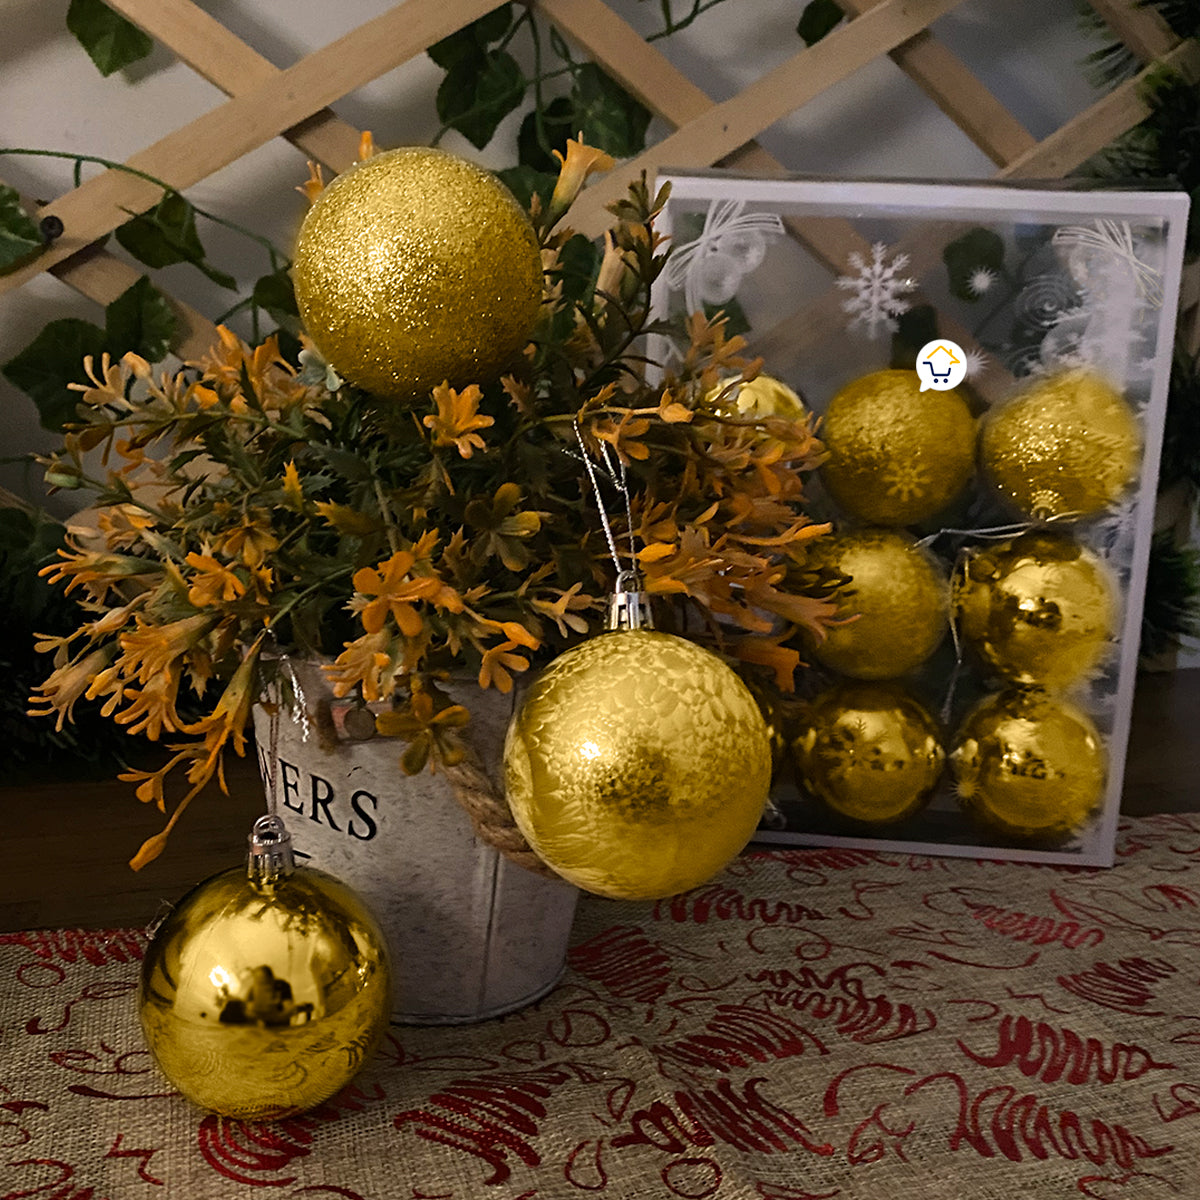 Bolas Navideñas x12 Esferas decorativas Decoración Árbol Navidad A136